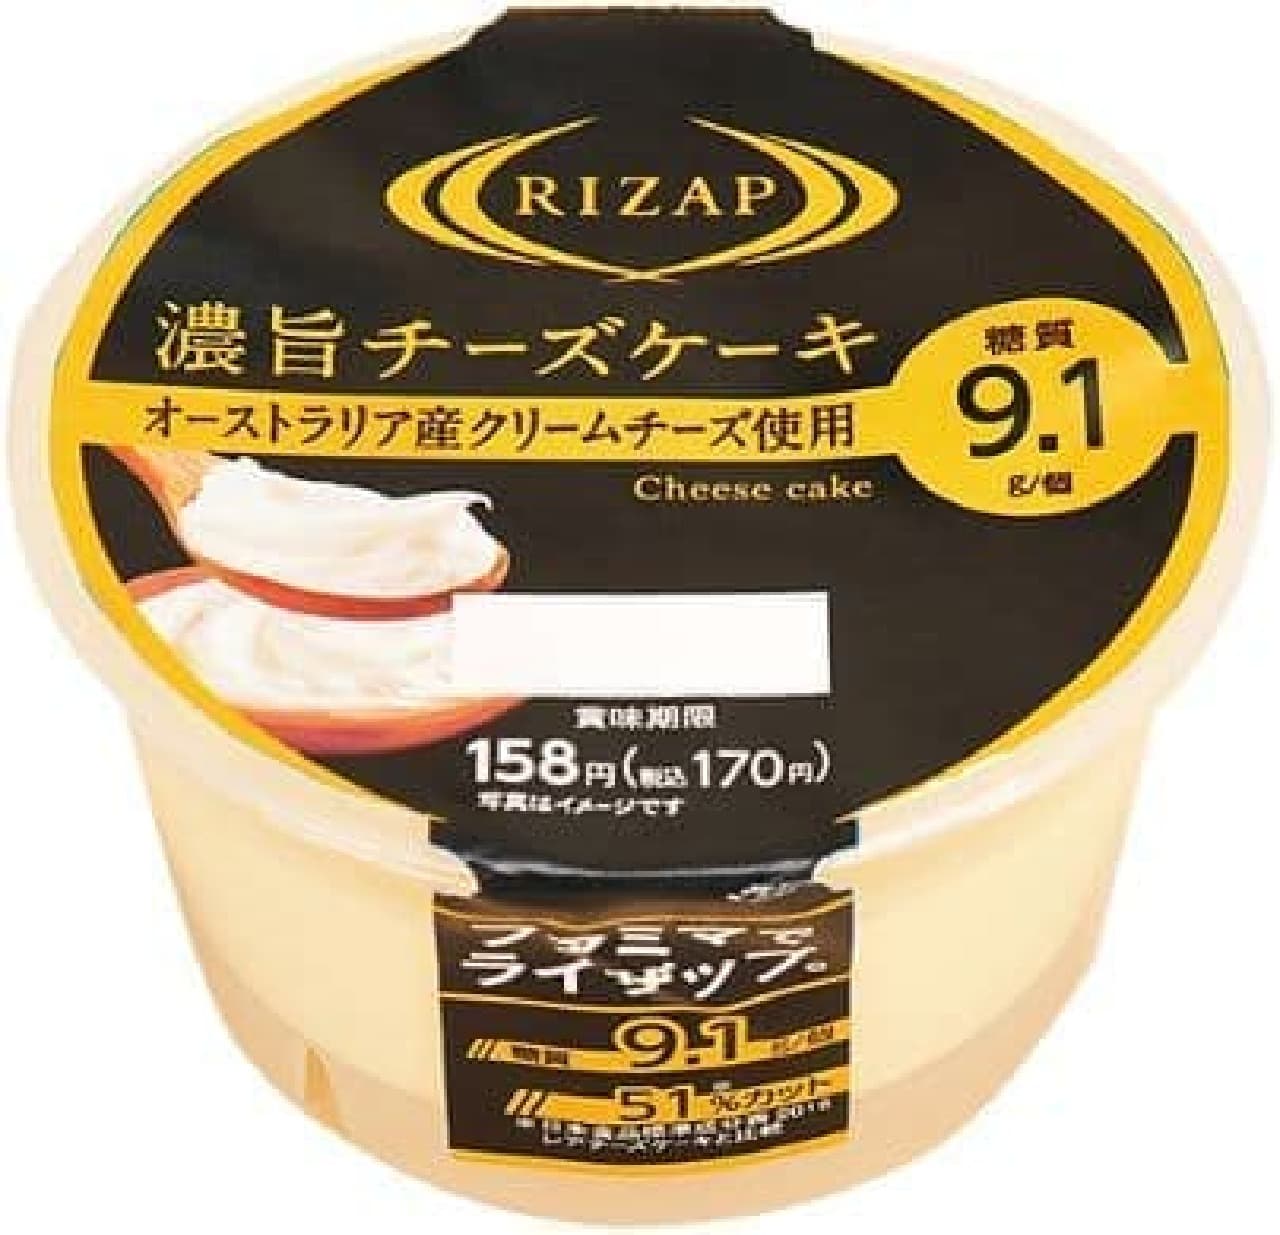 ファミリーマート「RIZAP 濃旨チーズケーキ」